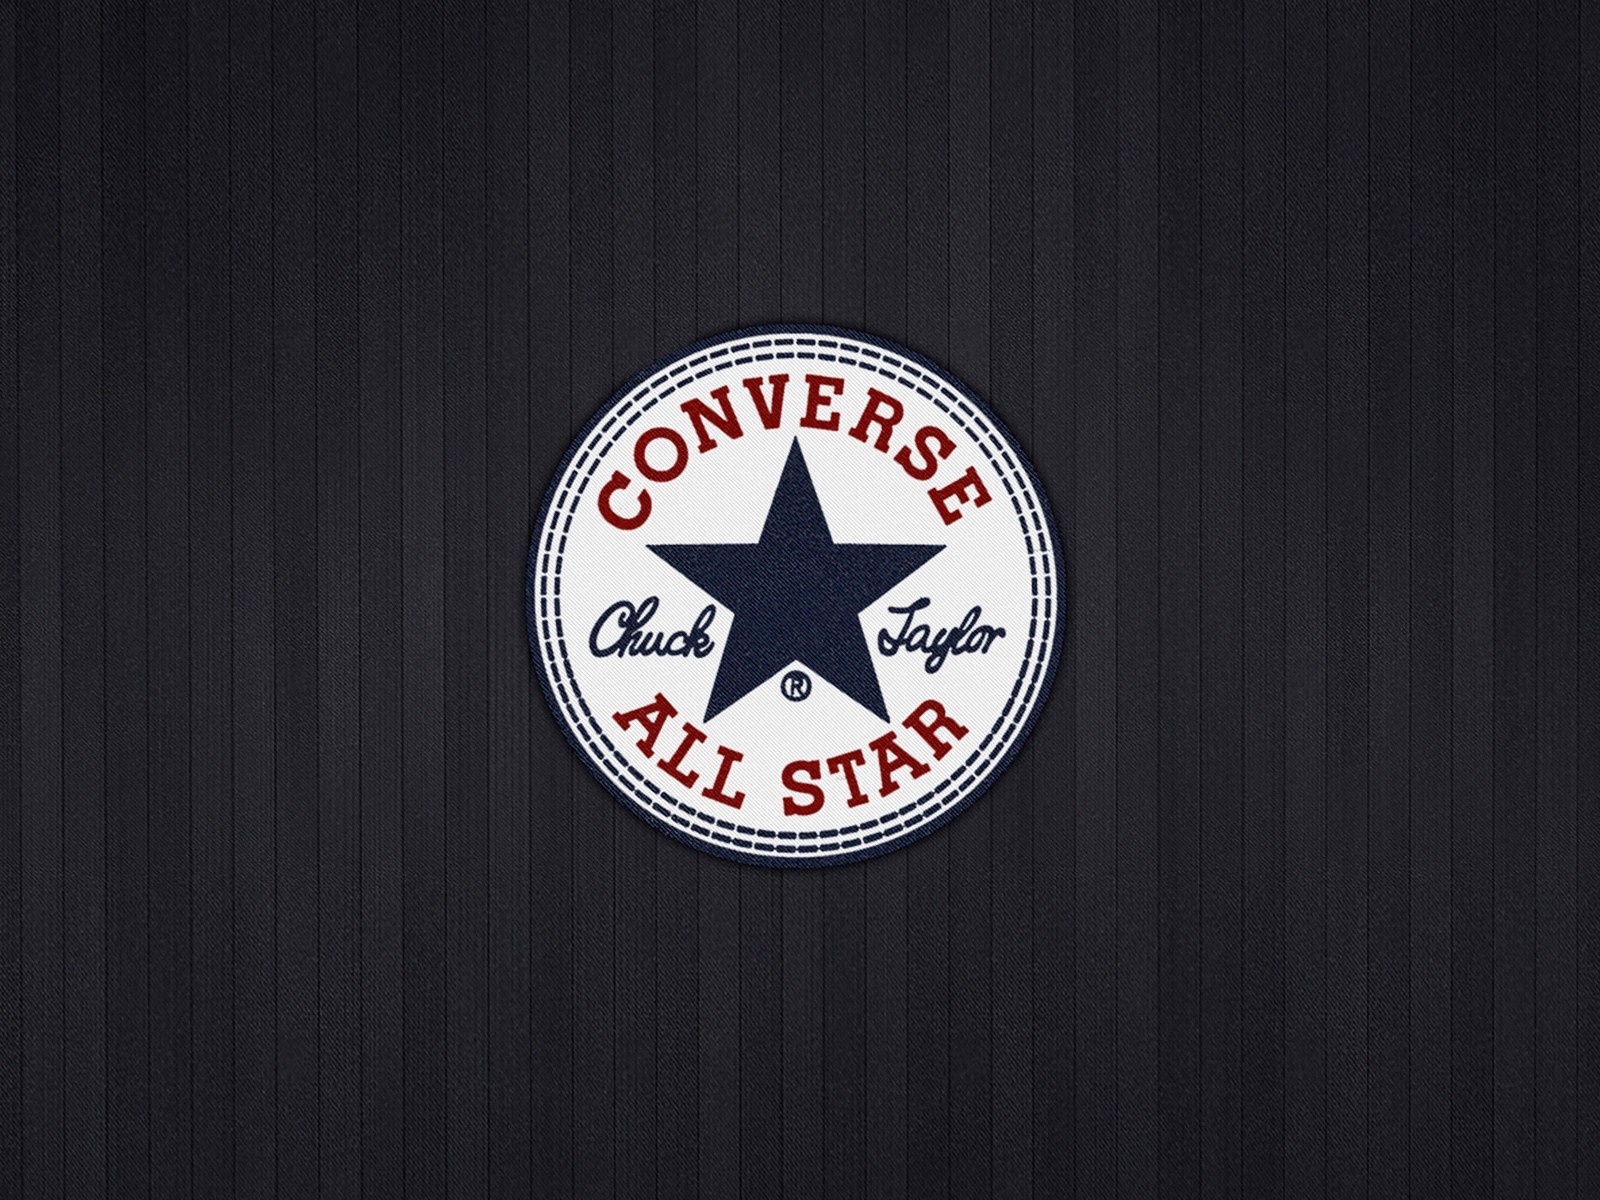 Converse All Star Wallpaper for Desktop 1600x1200